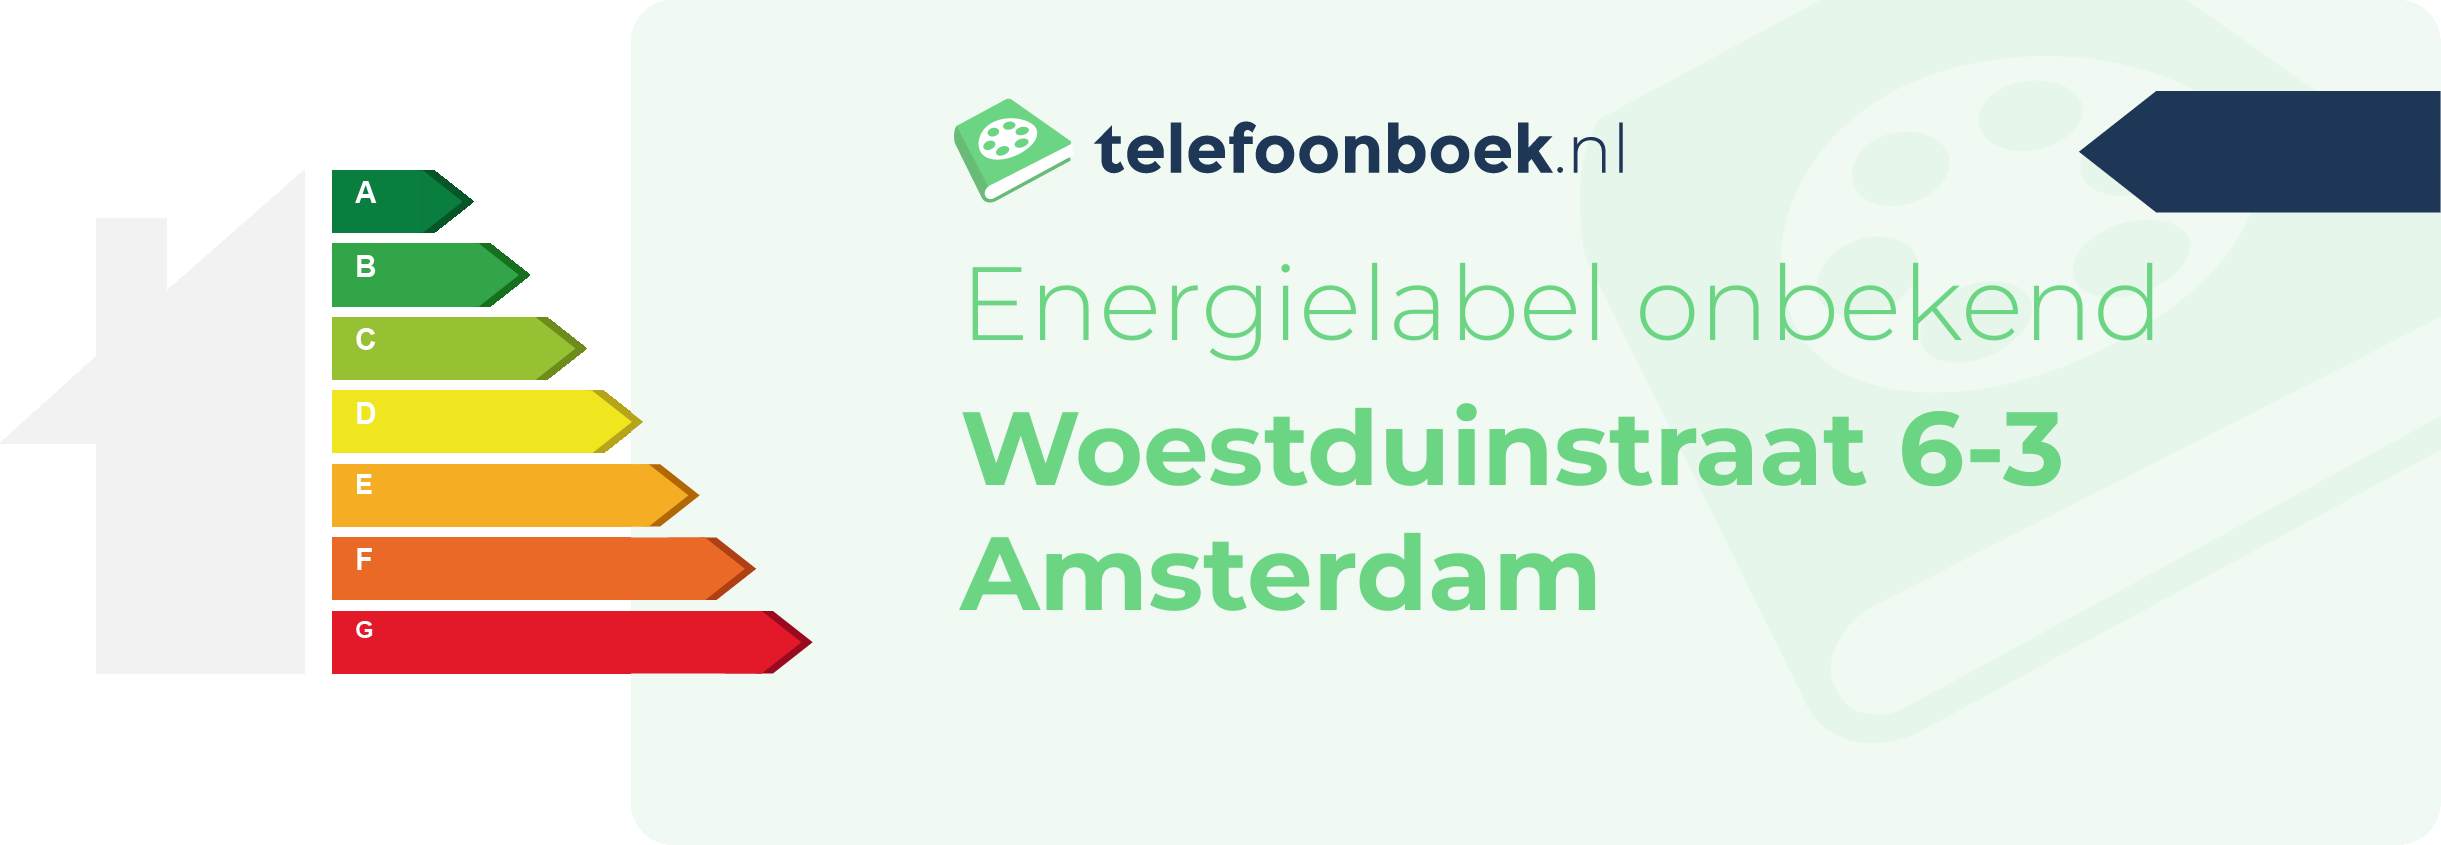 Energielabel Woestduinstraat 6-3 Amsterdam